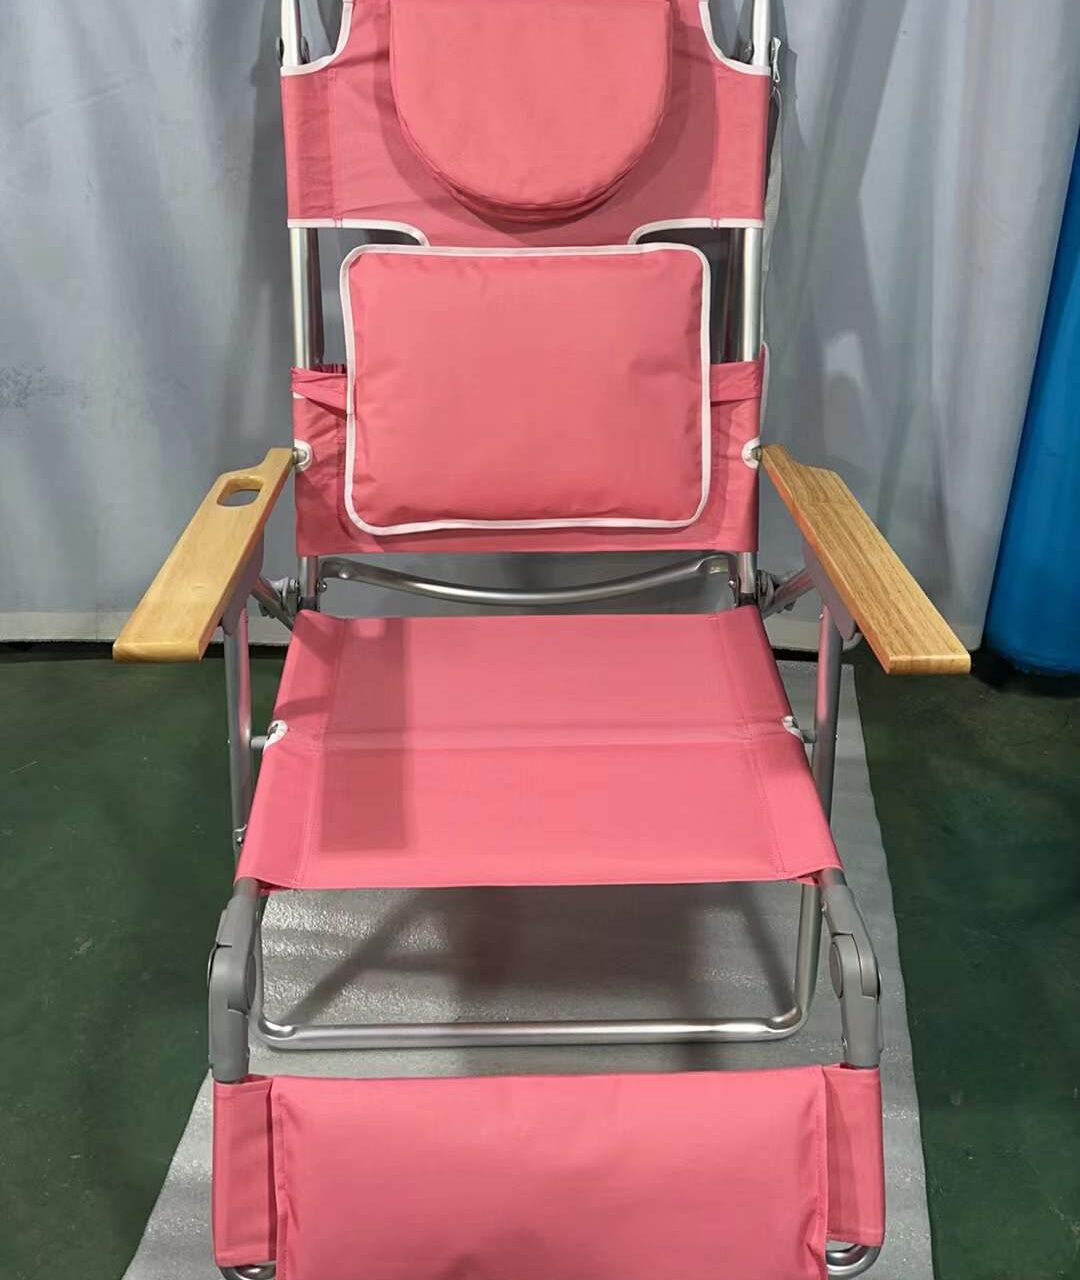 Flamingo Lounger Beach Chair